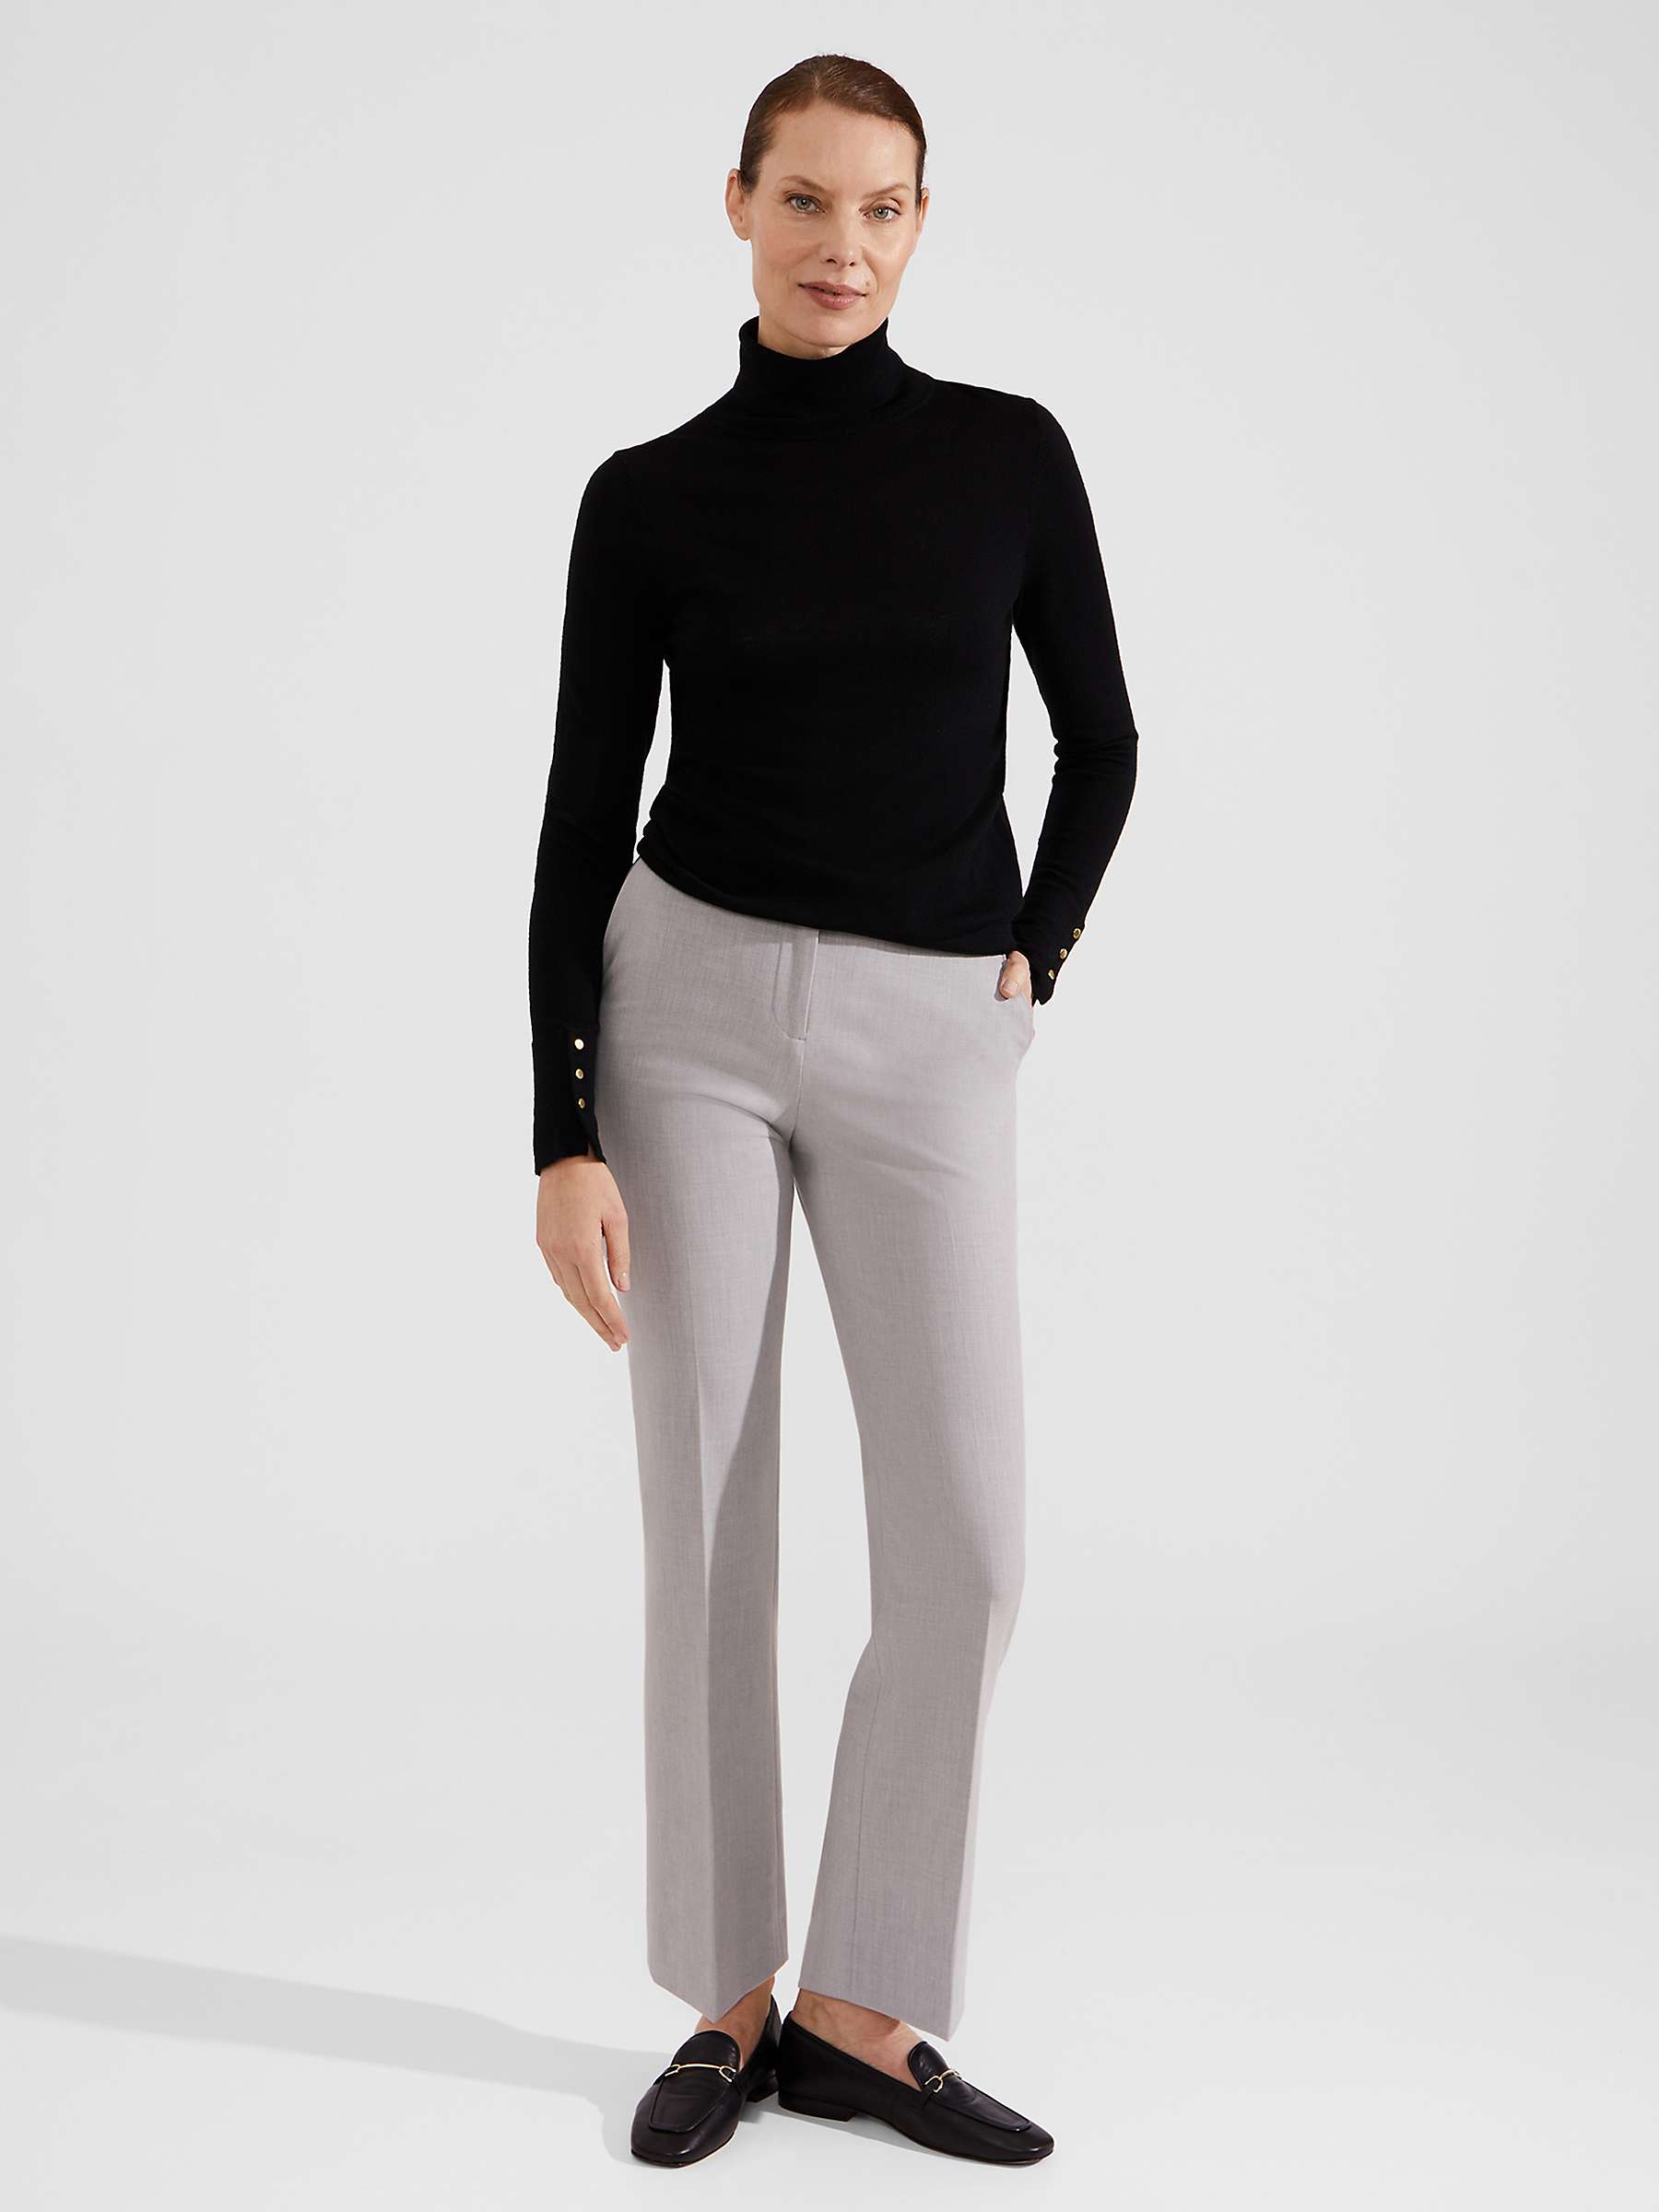 Buy Hobbs Lauren Slim Fit Trousers, Pale Grey Online at johnlewis.com